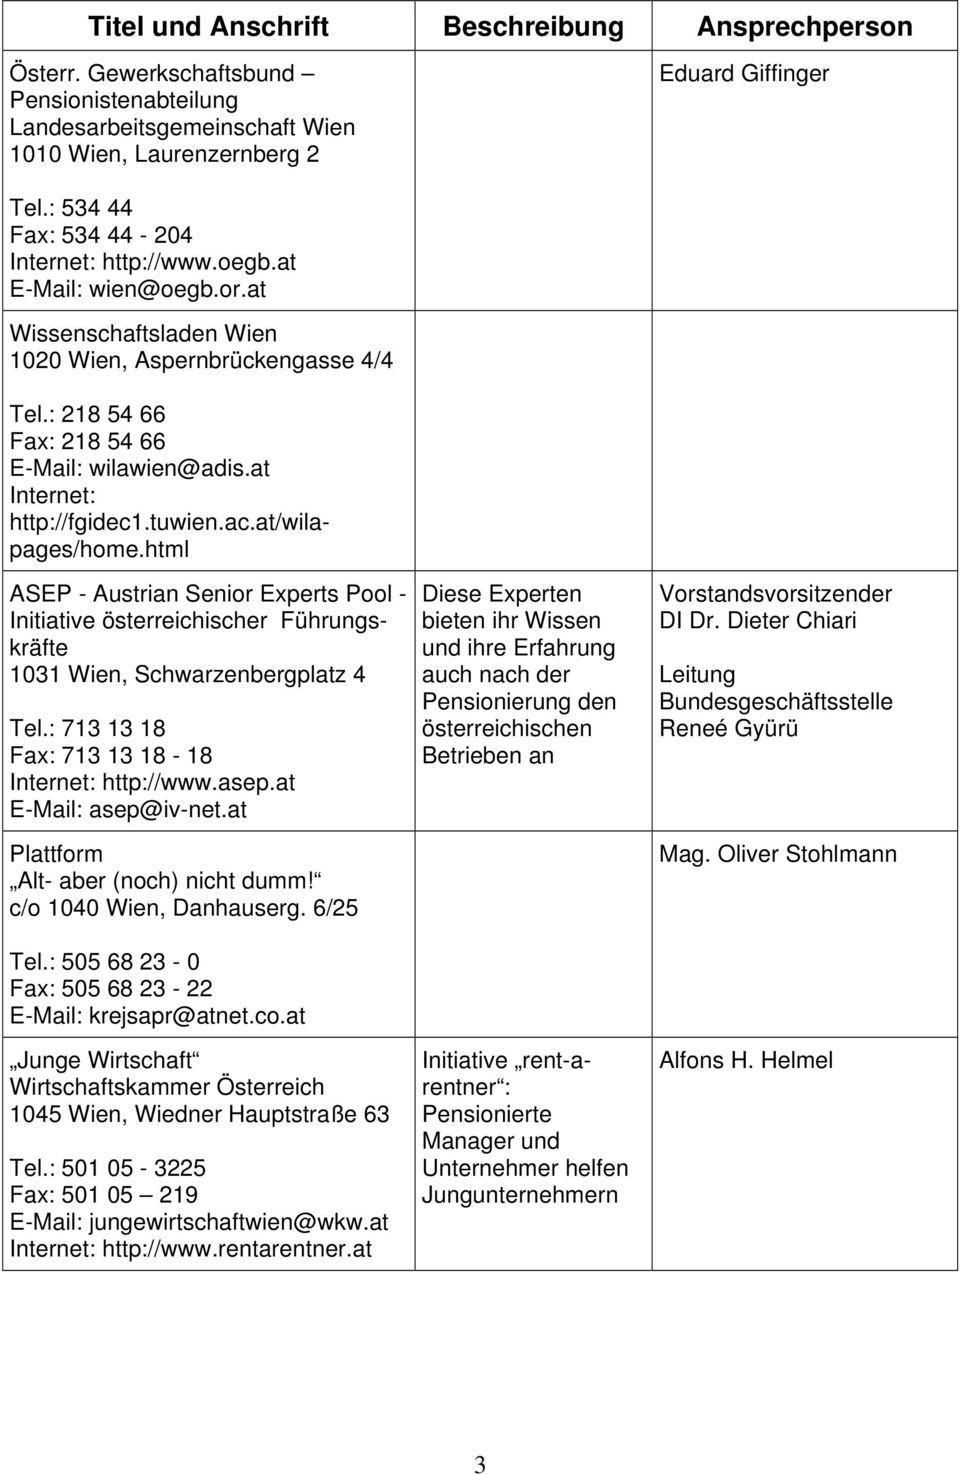 html ASEP - Austrian Senior Experts Pool - Initiative österreichischer Führungskräfte 1031 Wien, Schwarzenbergplatz 4 Tel.: 713 13 18 Fax: 713 13 18-18 Internet: http://www.asep.